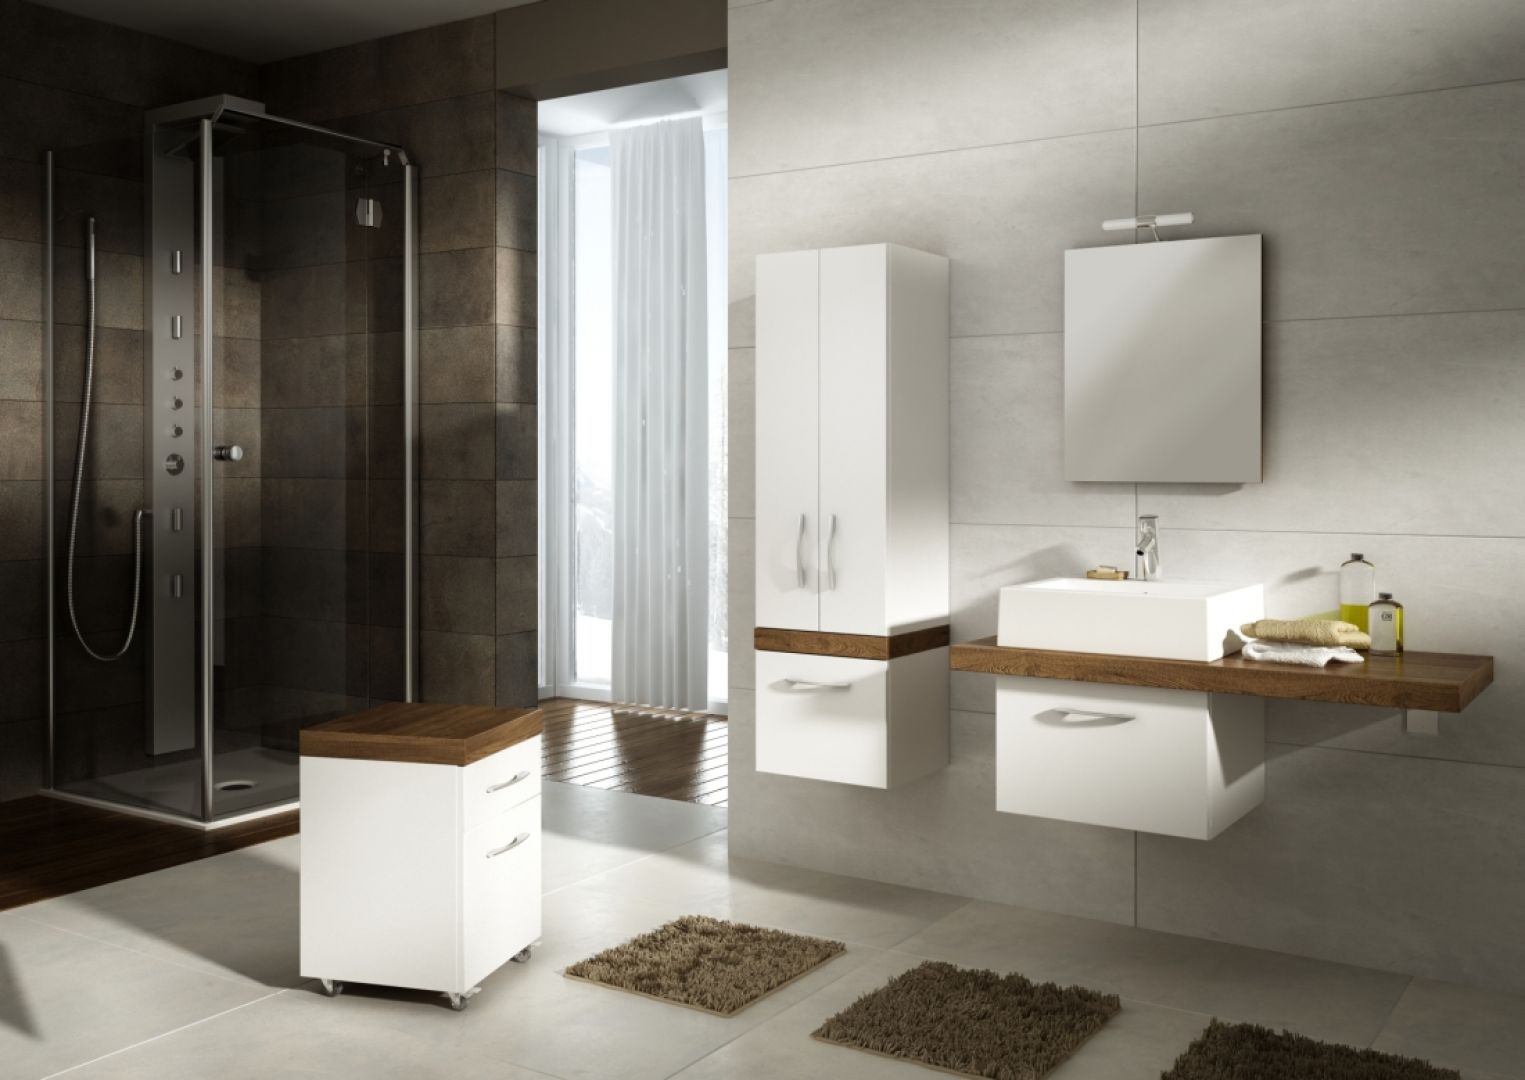 Kolekcja Merida marki Aquaform charakteryzuje się nowoczesnym designem. Sprawdzi się w minimalistycznych łazienkach. Fot. Aquaform